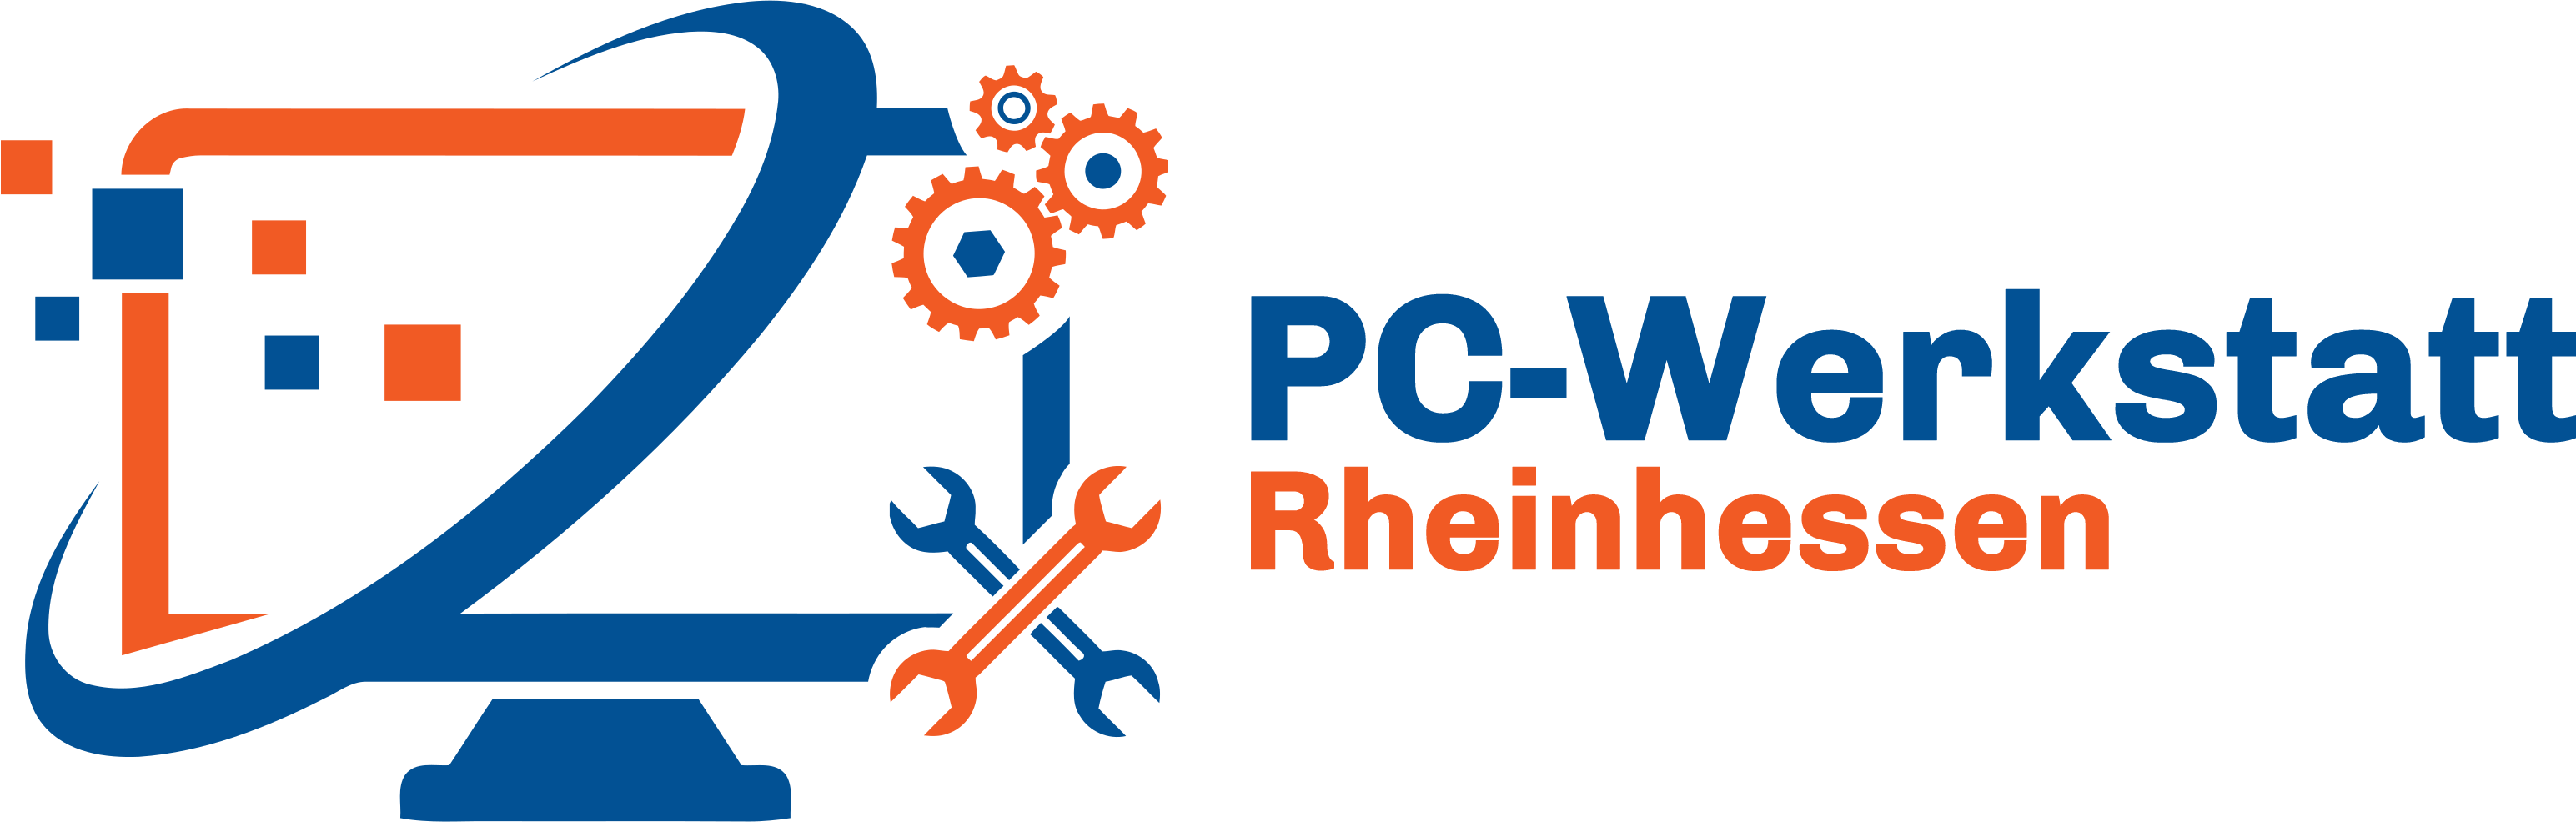 PC-Werkstatt Rheinhessen